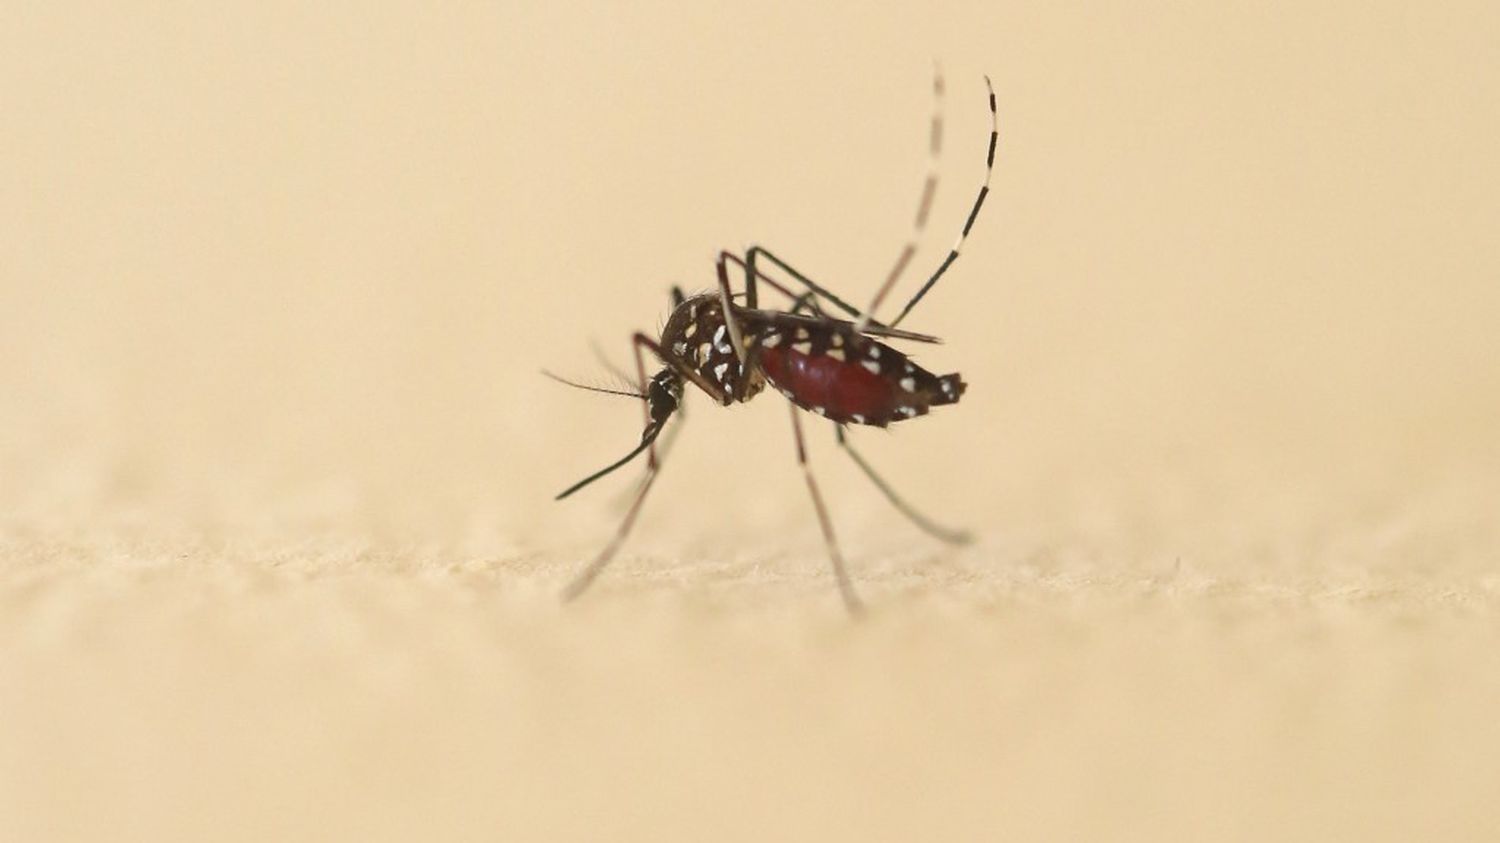 Plus de 600 nouveaux cas importés de dengue ont été recensés en France hexagonale depuis le 1er mai